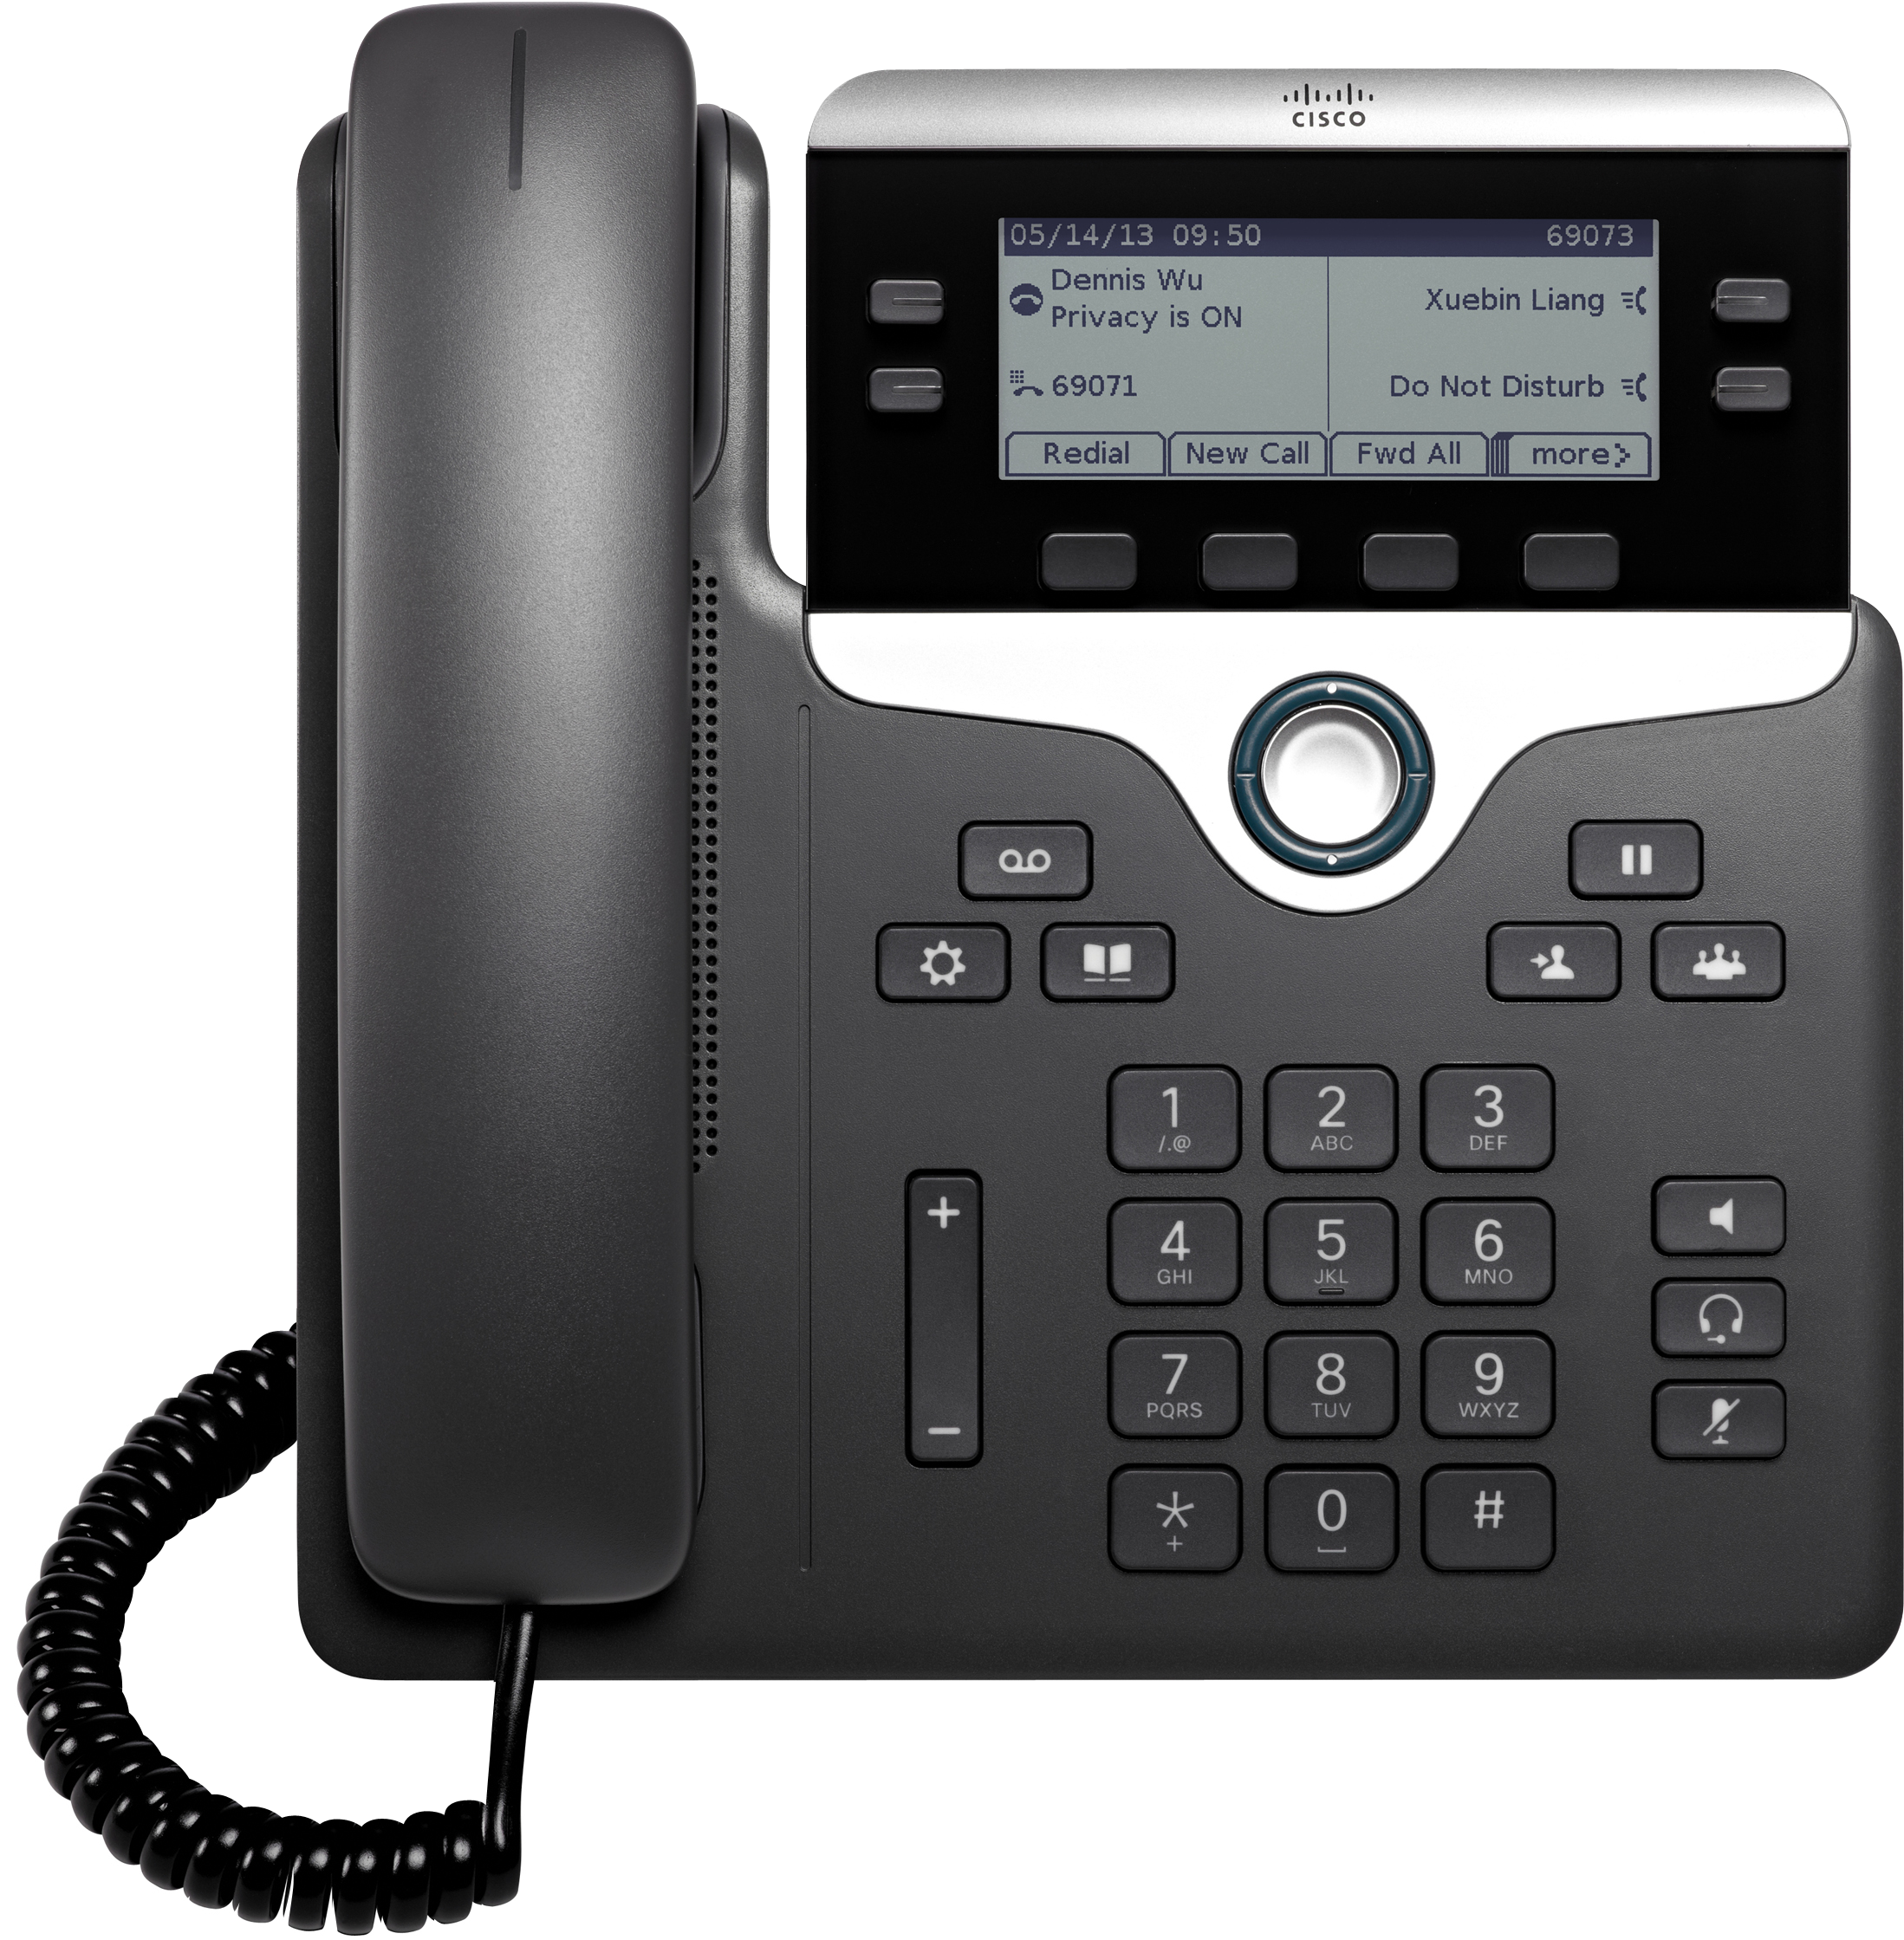 Với thiết kế hiện đại và tính năng đa dạng, điện thoại VoIP Cisco 7821 sẽ trở thành người đồng hành đắc lực trong công việc của bạn. Hãy xem hình ảnh để khám phá tất cả các tính năng của thiết bị này và cách sử dụng hiệu quả.